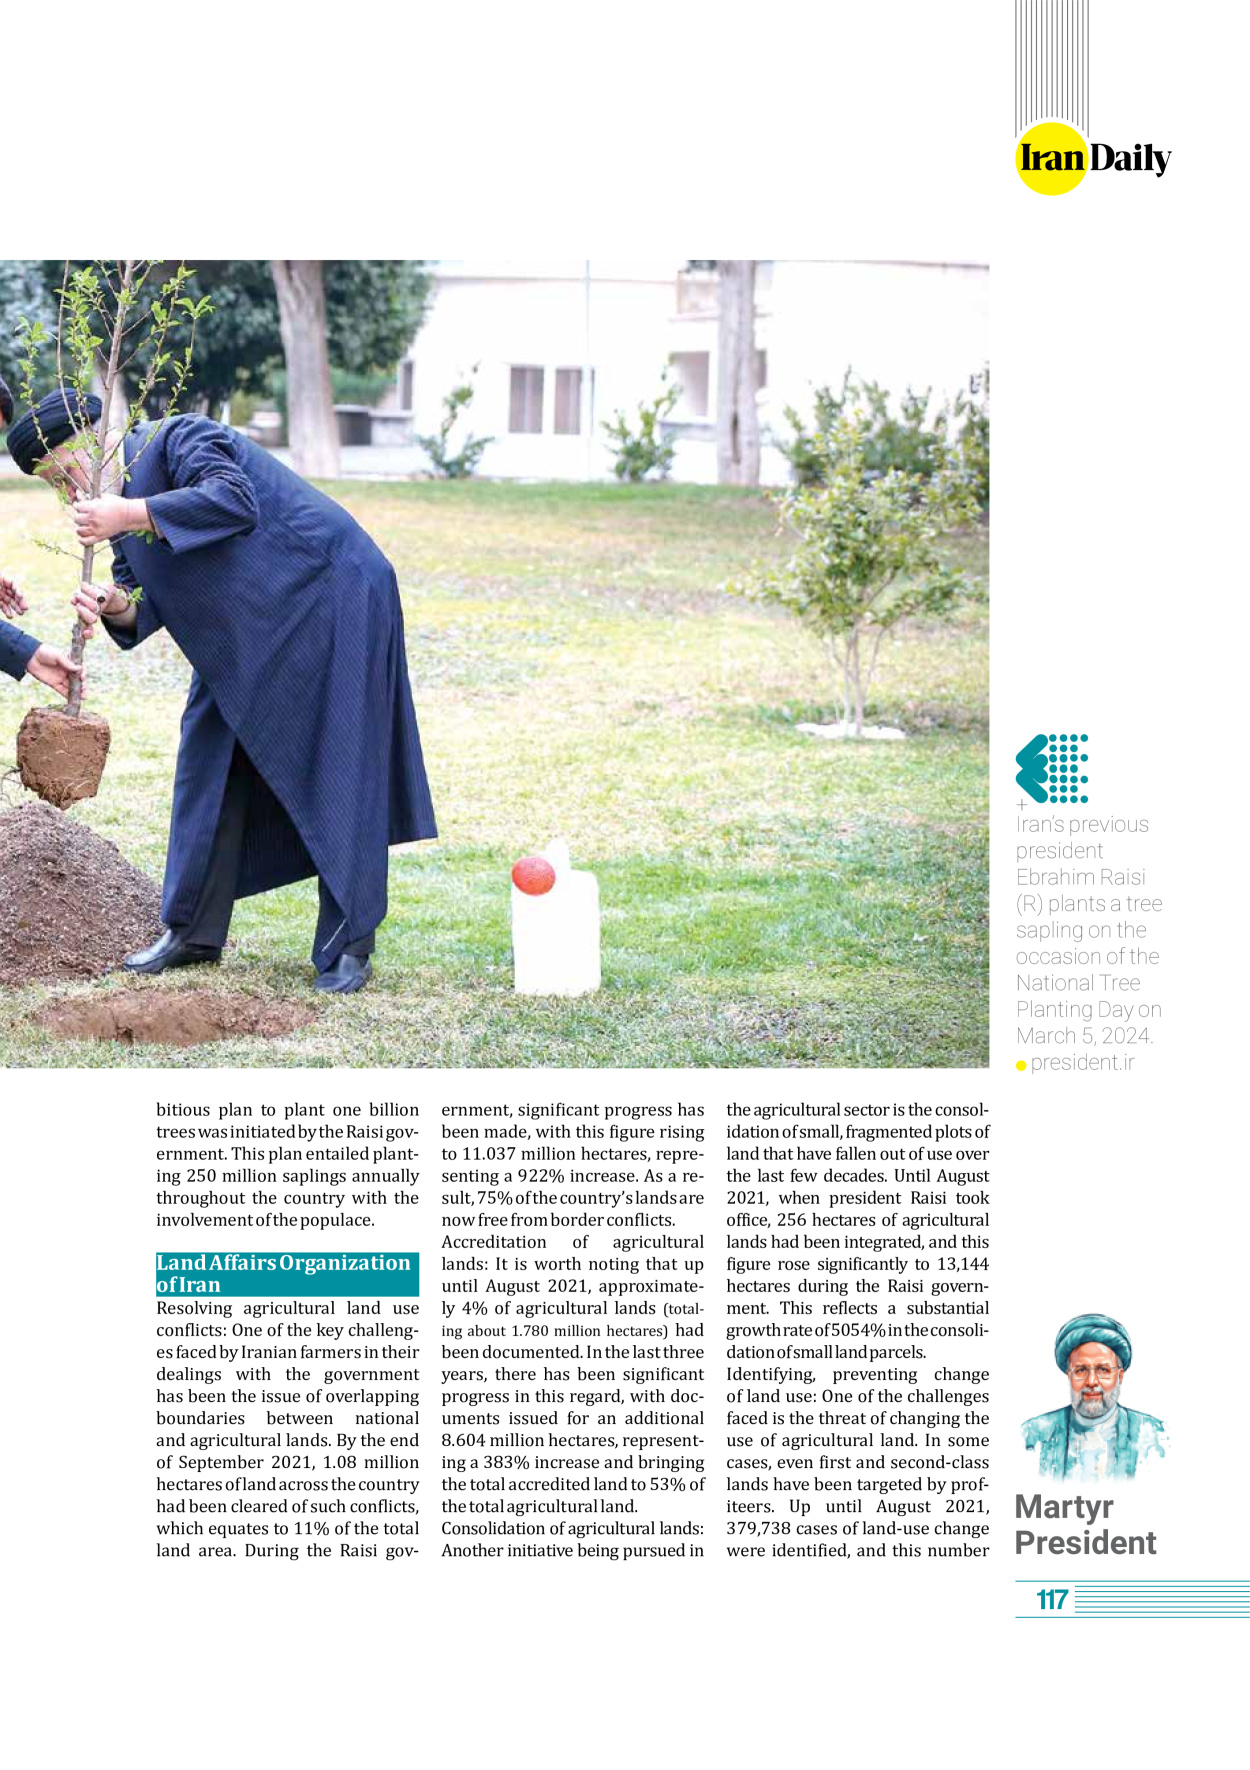 روزنامه ایران - ویژه نامه وِزه نامه چهلم شهید رییسی( انگلیسی) - ۱۷ تیر ۱۴۰۳ - صفحه ۱۱۷